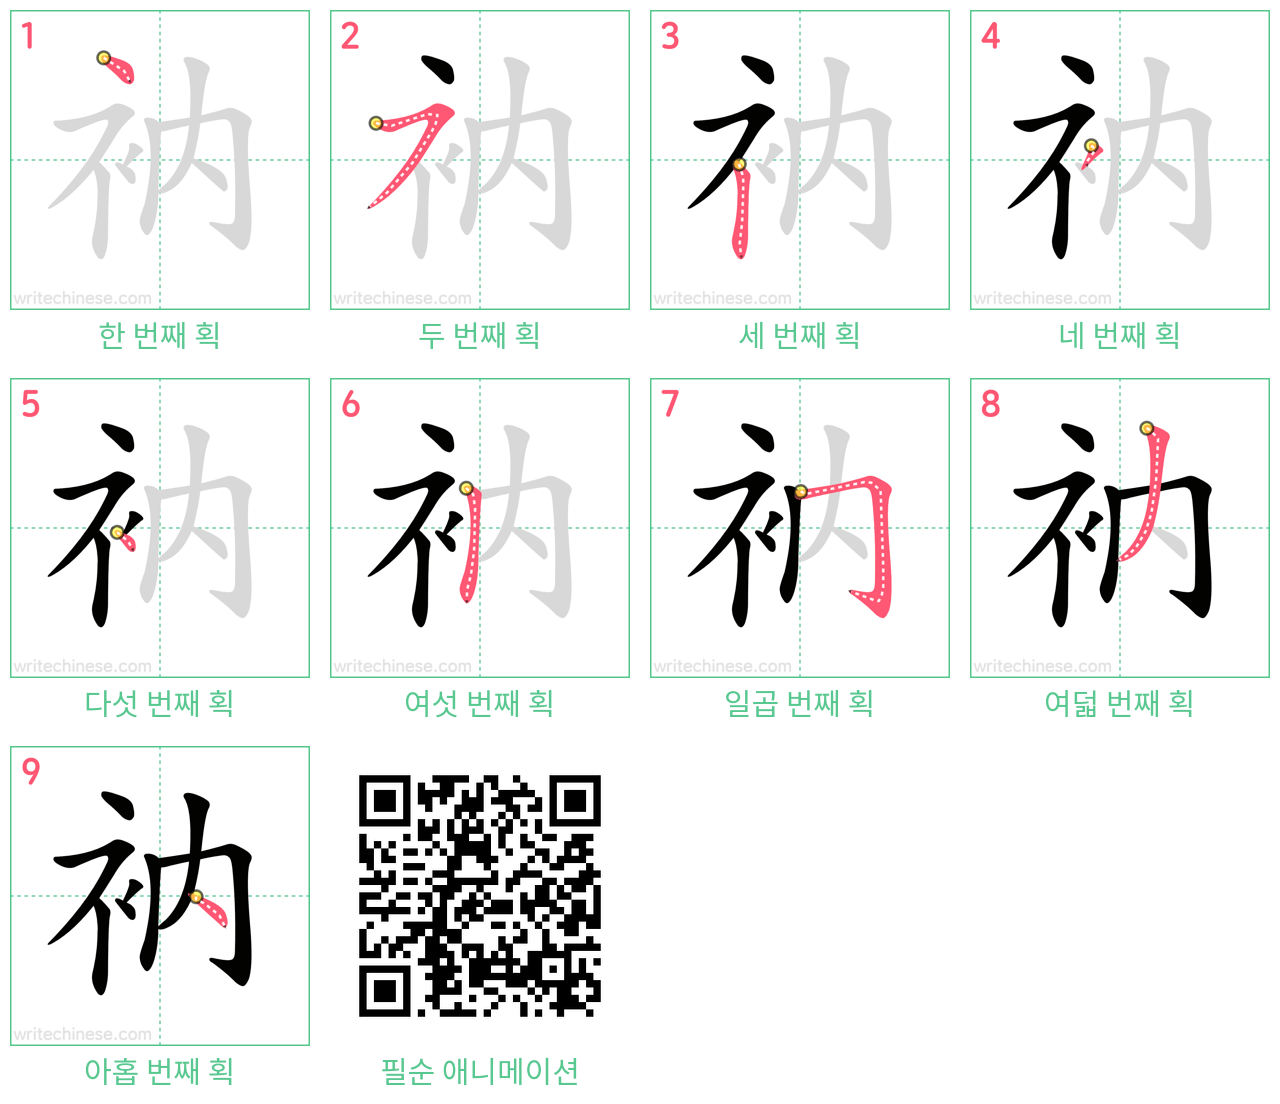 衲 step-by-step stroke order diagrams